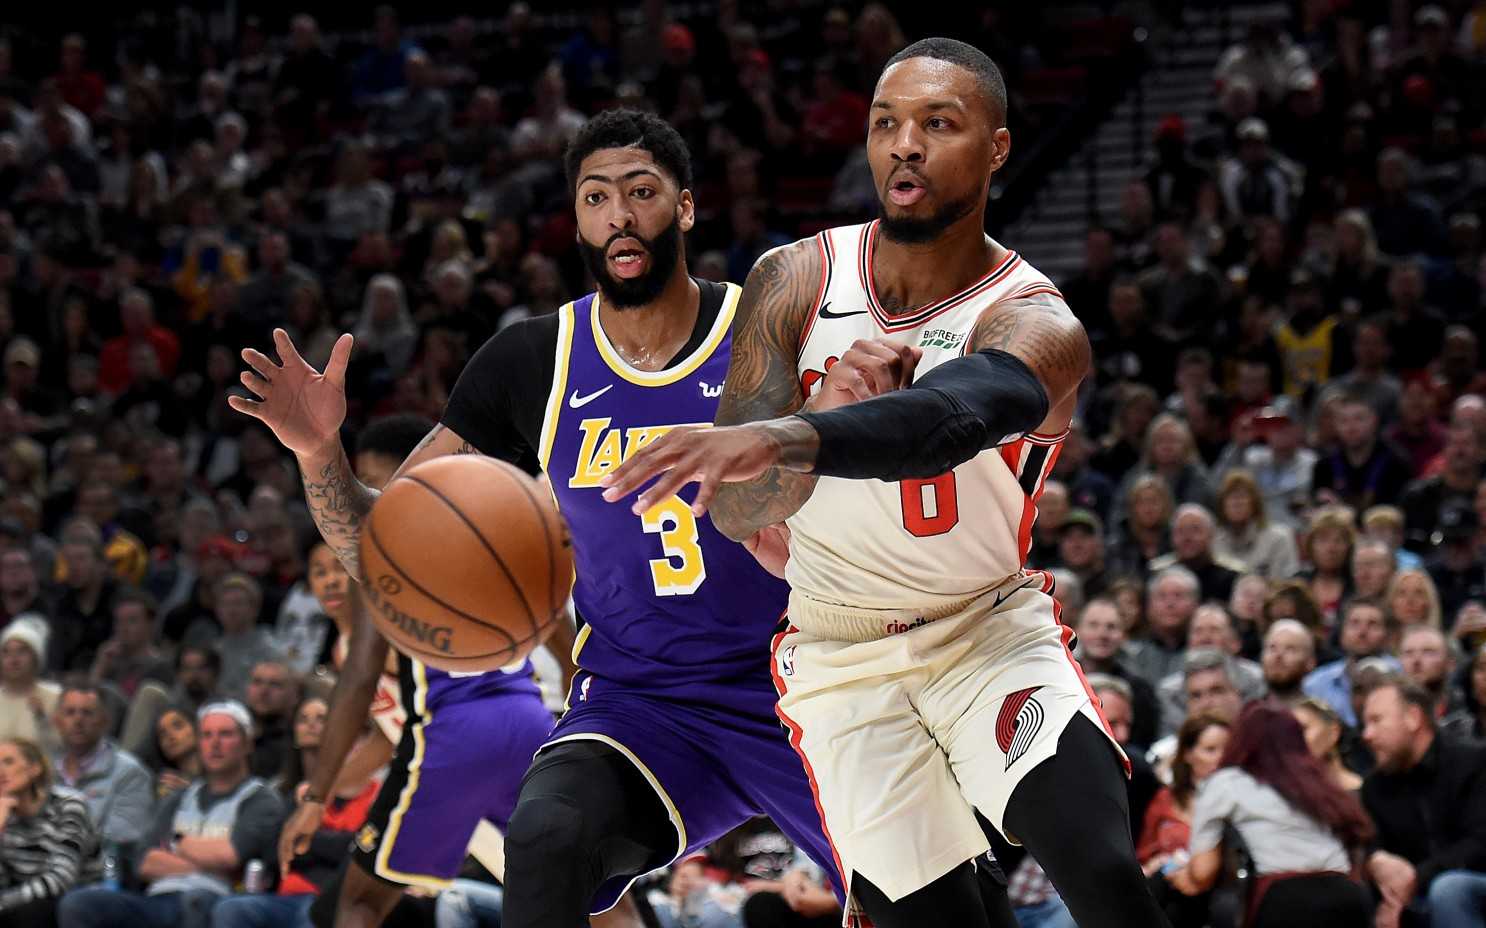 "Ils pourraient avoir la formule pour contrarier les Lakers": un ancien joueur de la NBA soutient les Portland Trail Blazers pour assommer les favoris